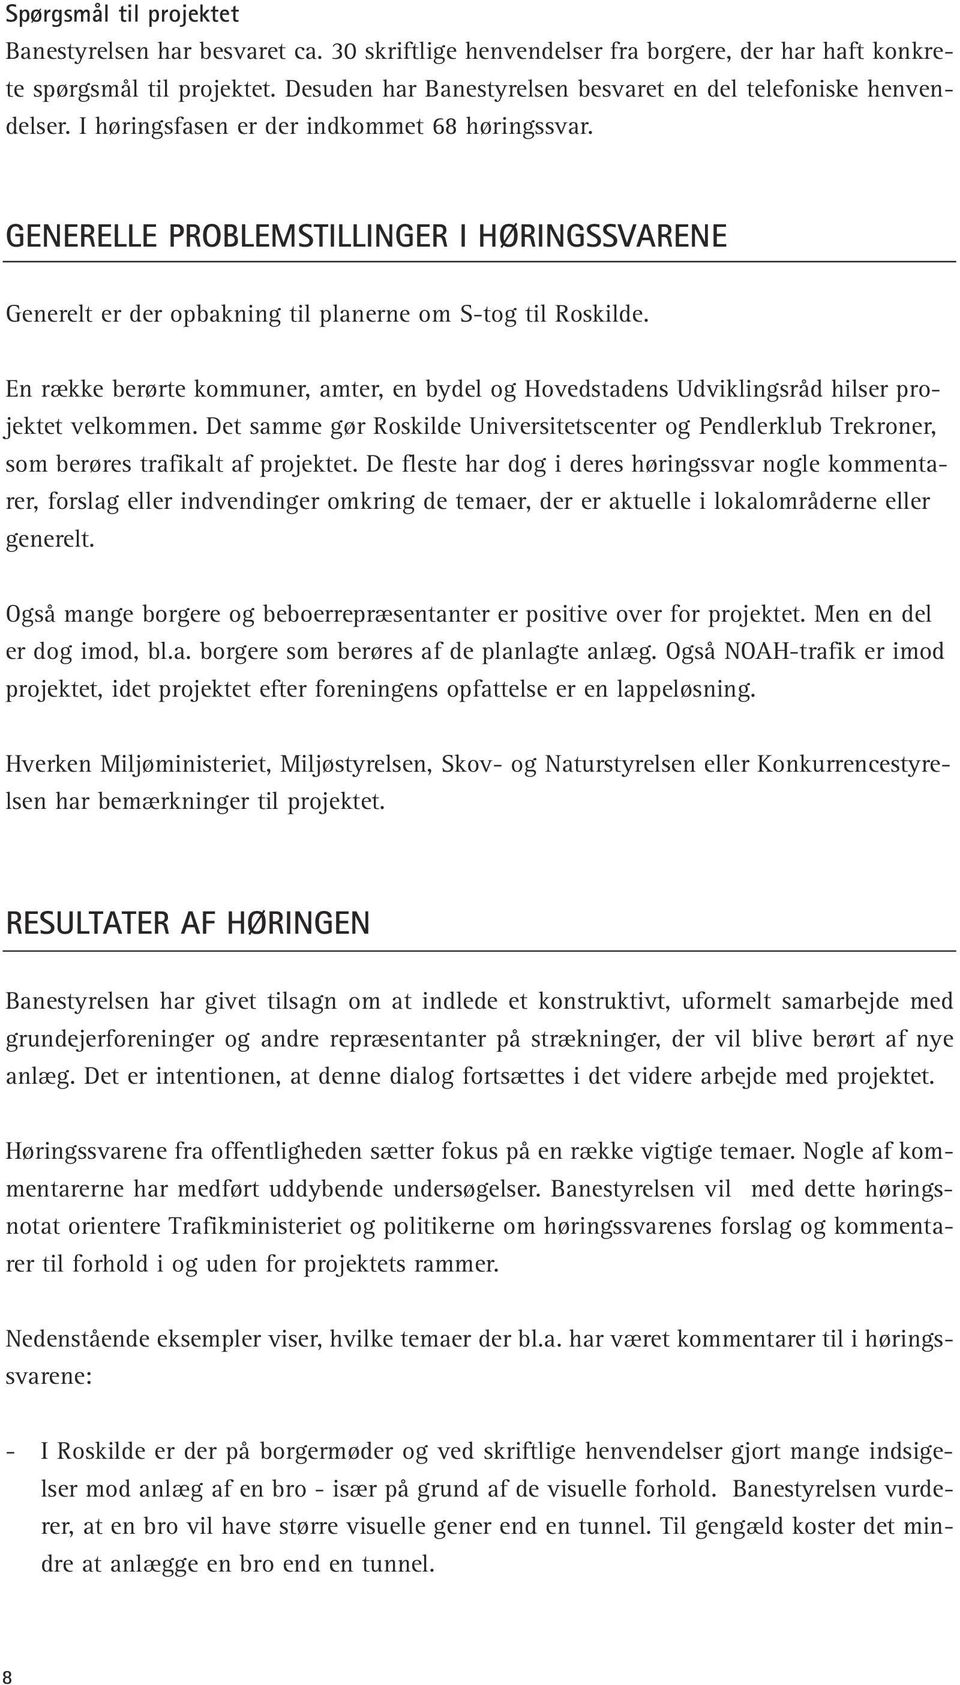 GENERELLE PROBLEMSTILLINGER I HØRINGSSVARENE Generelt er der opbakning til planerne om S-tog til Roskilde.